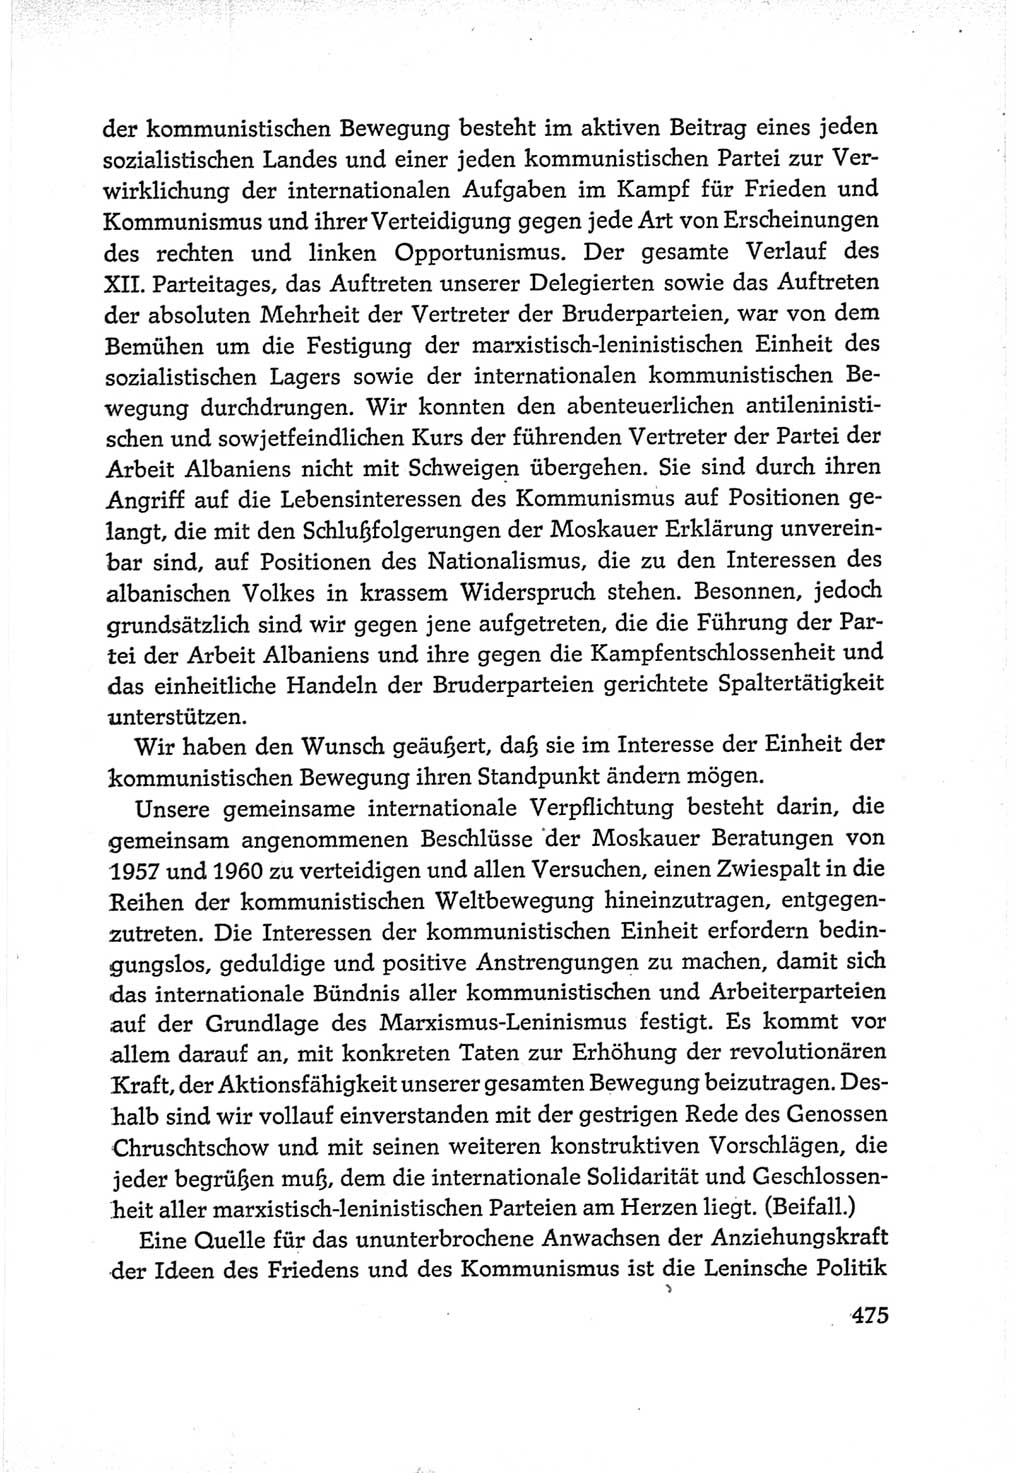 Protokoll der Verhandlungen des Ⅵ. Parteitages der Sozialistischen Einheitspartei Deutschlands (SED) [Deutsche Demokratische Republik (DDR)] 1963, Band Ⅰ, Seite 475 (Prot. Verh. Ⅵ. PT SED DDR 1963, Bd. Ⅰ, S. 475)